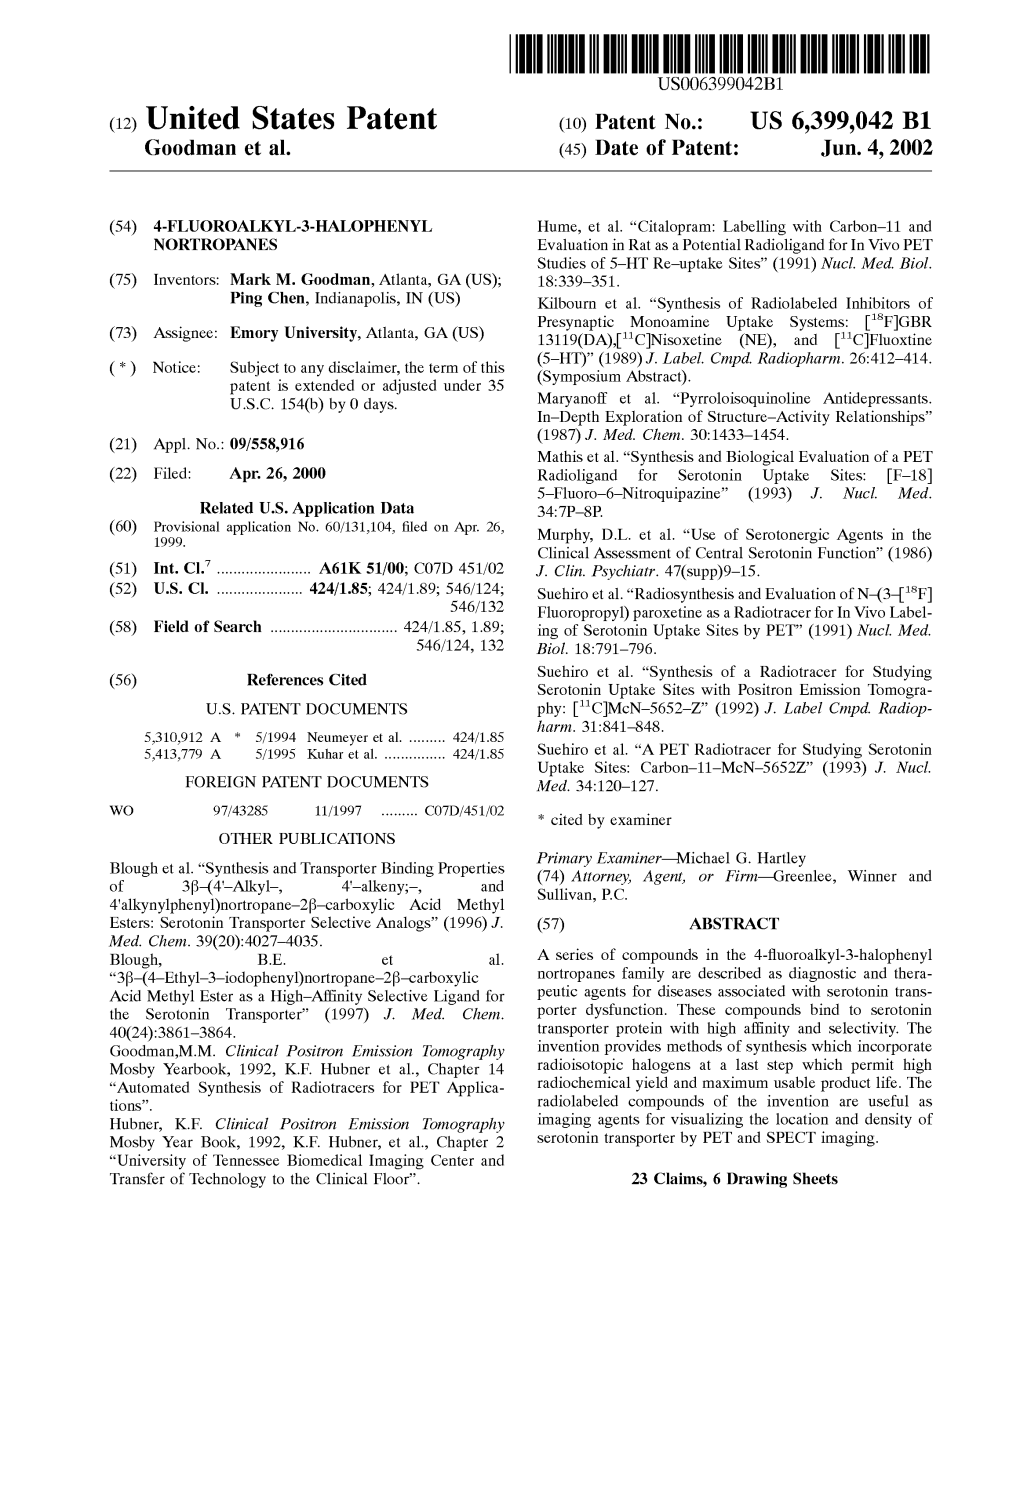 (12) United States Patent (10) Patent No.: US 6,399,042 B1 G00dman Et Al